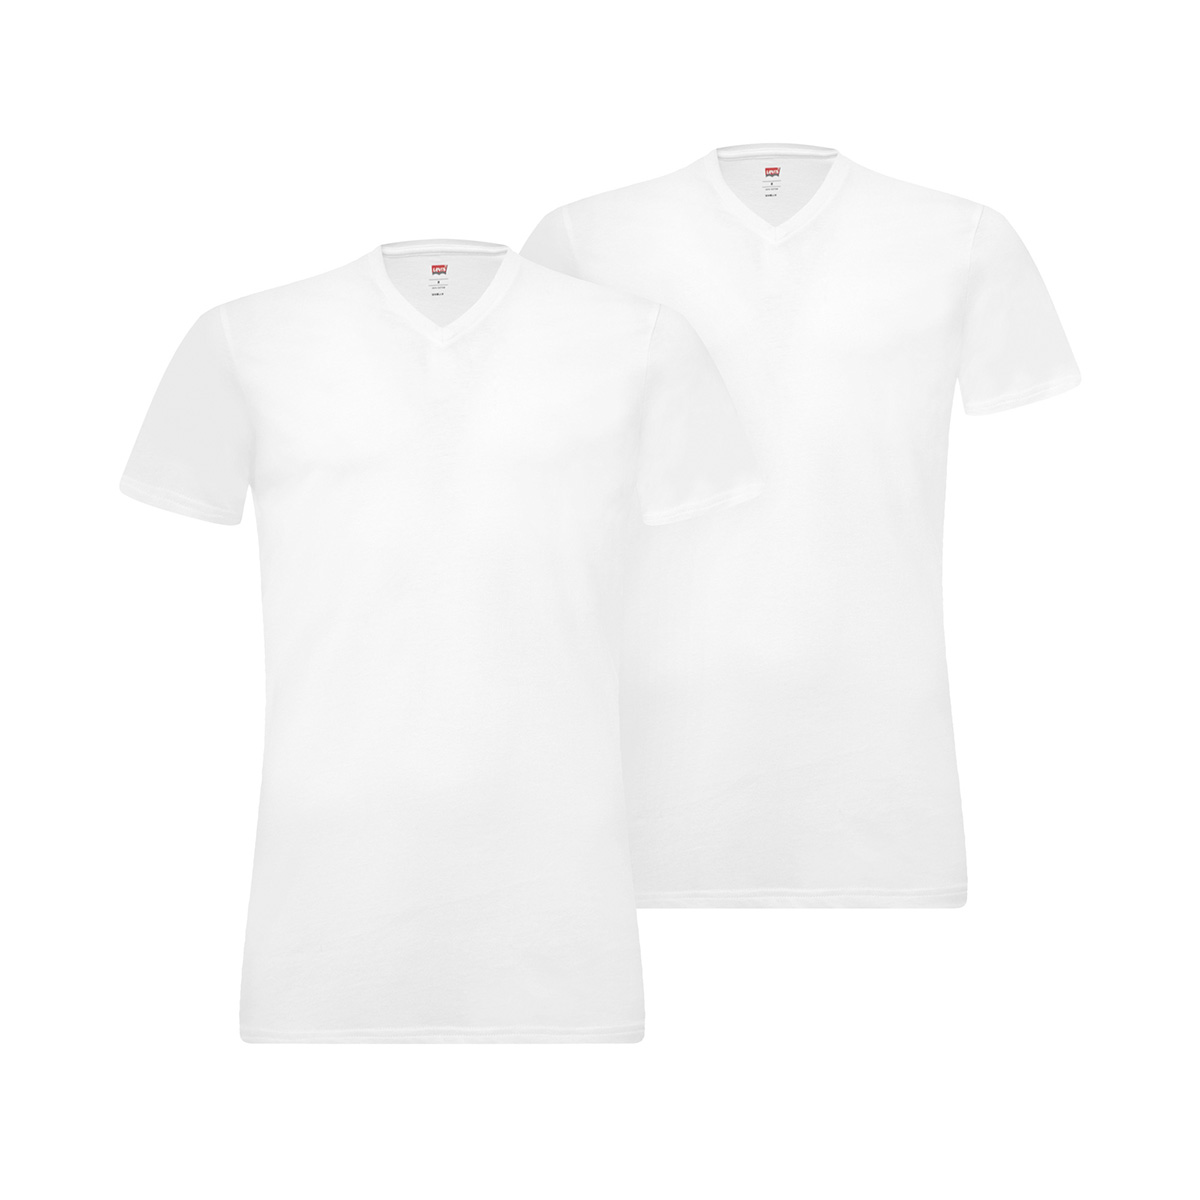 2 er Pack Levis 200SF V-Neck T-Shirt Men Herren Unterhemd V-Ausschnitt von Levi&#039;s